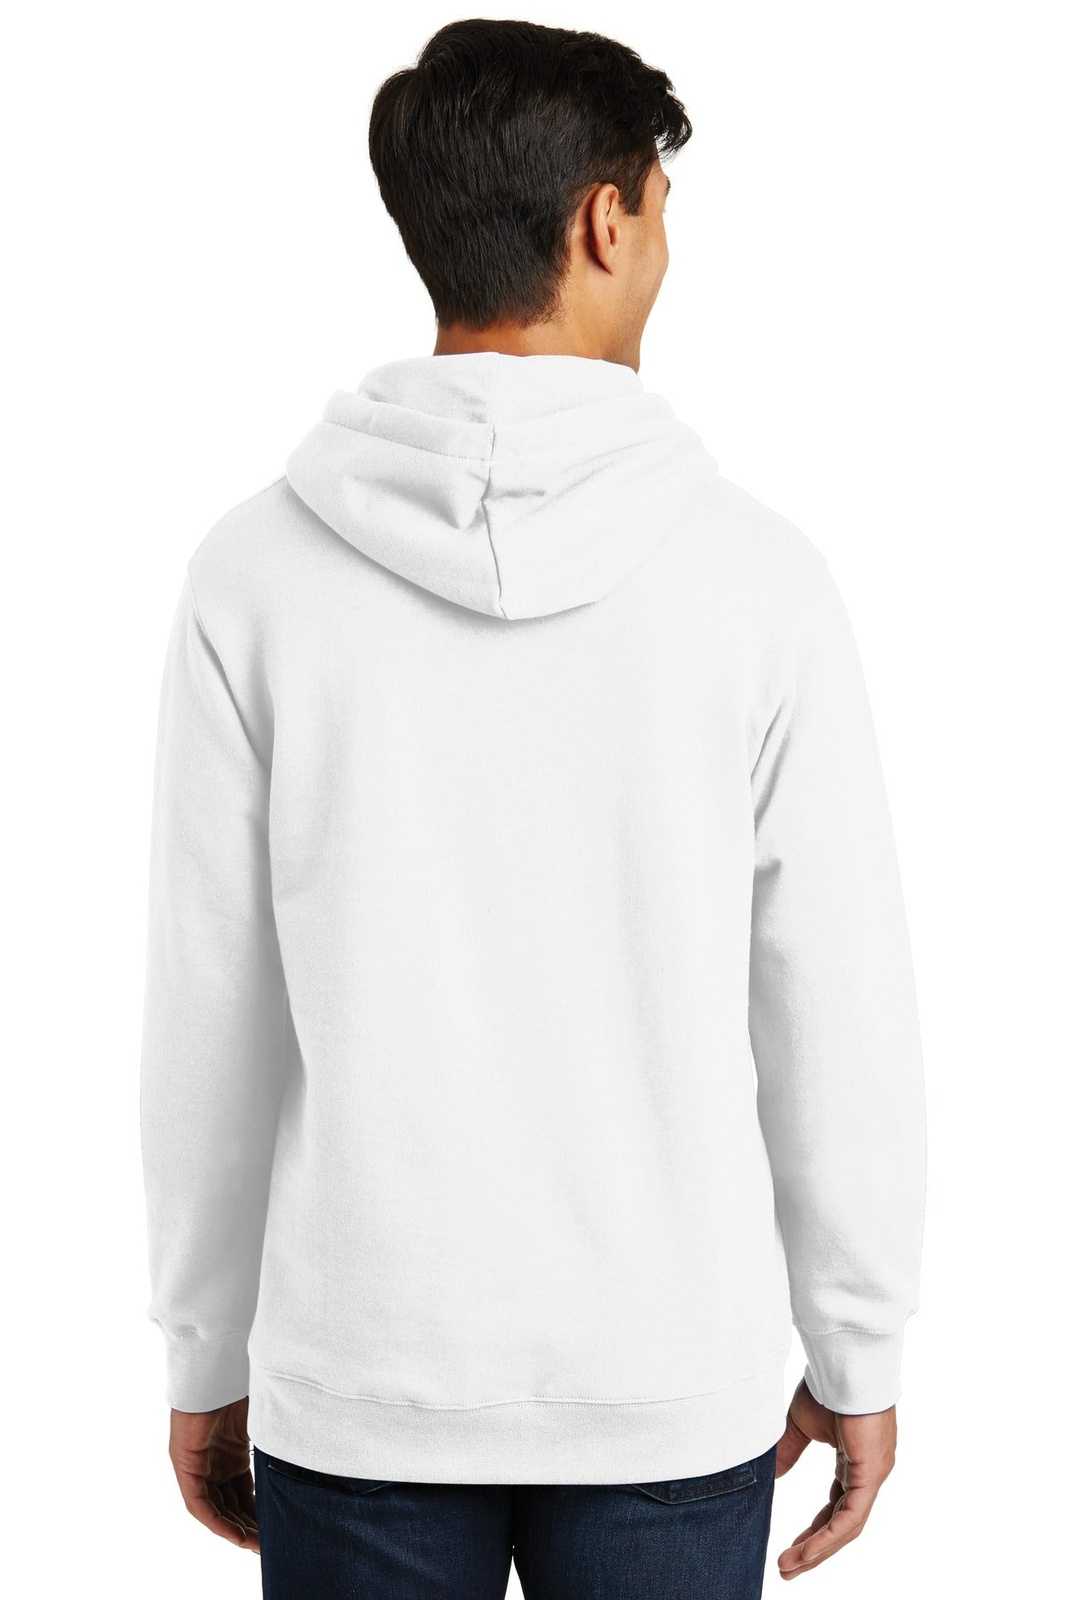 Port & Company PC850H Fan Favorite Fleece Pullover Hooded Sweatshirt - White - HIT a Double - 1